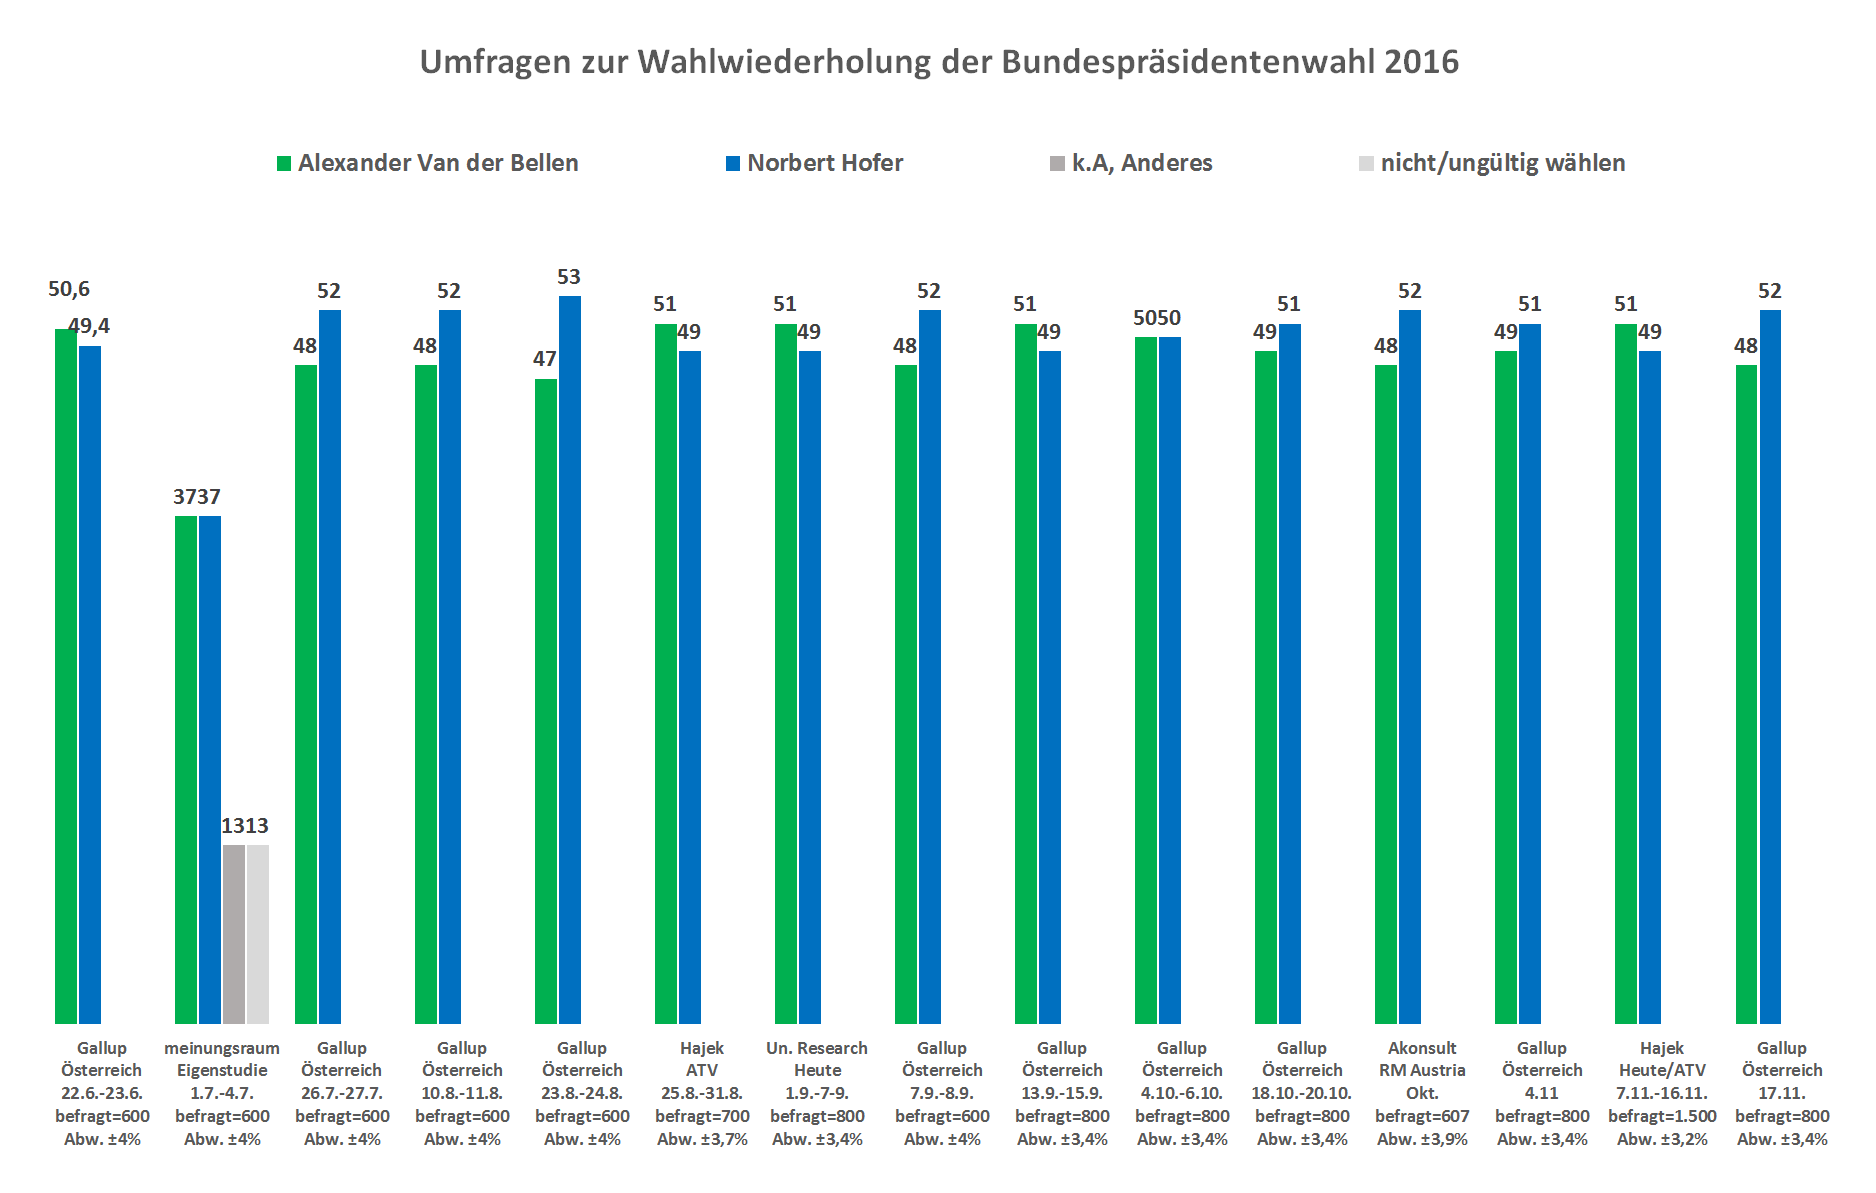 Die aktuellste Umfrage vo  Gallup zur Bundespräsidentenwahl vom 24. August zeigt Norbert Hofer mit 53 Prozent vor Van der Bellen mit 47 Peozent